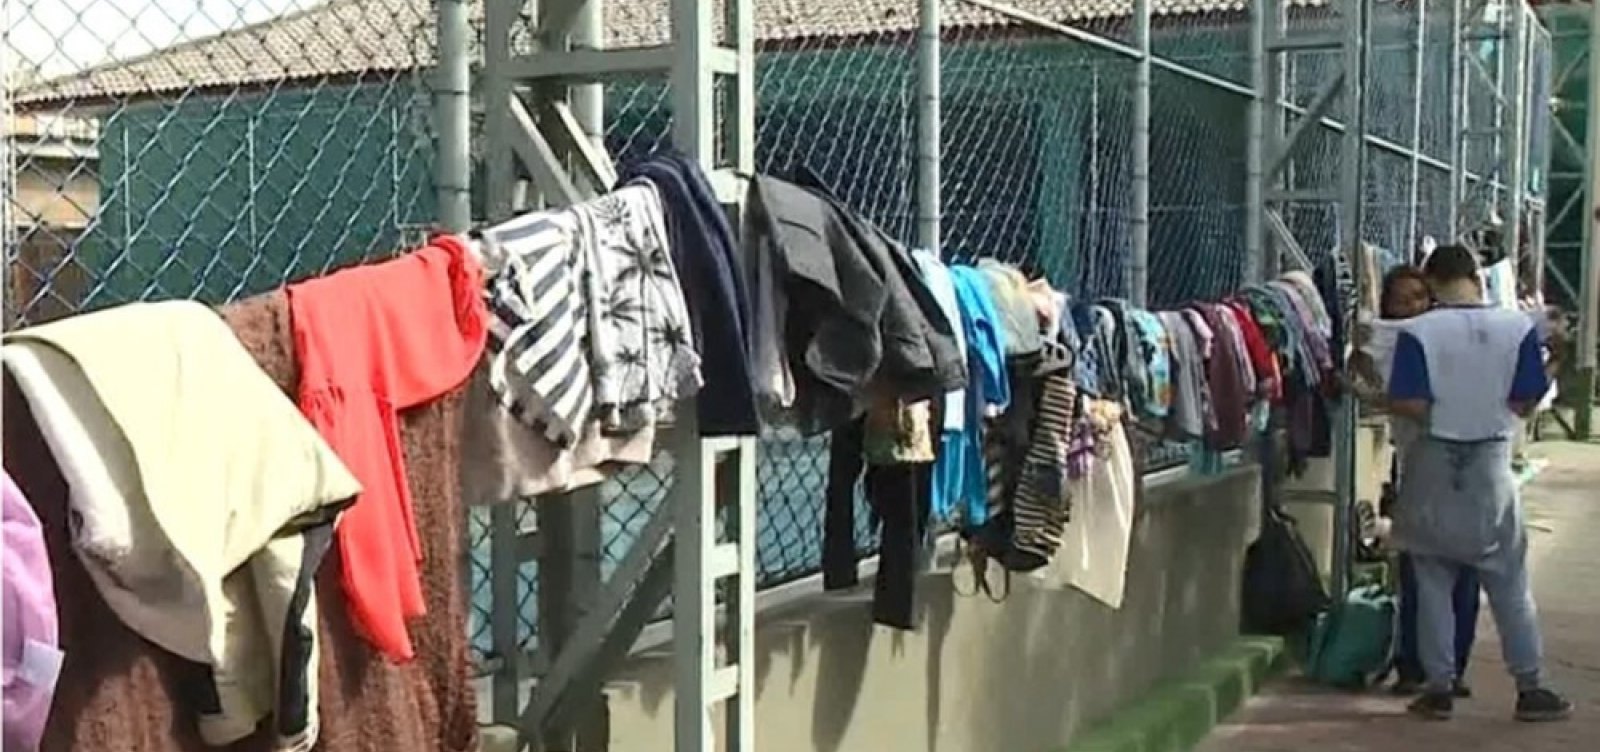 Campanha 'Varal solidário' doa roupas para pessoas em situação de rua no centro de Salvador